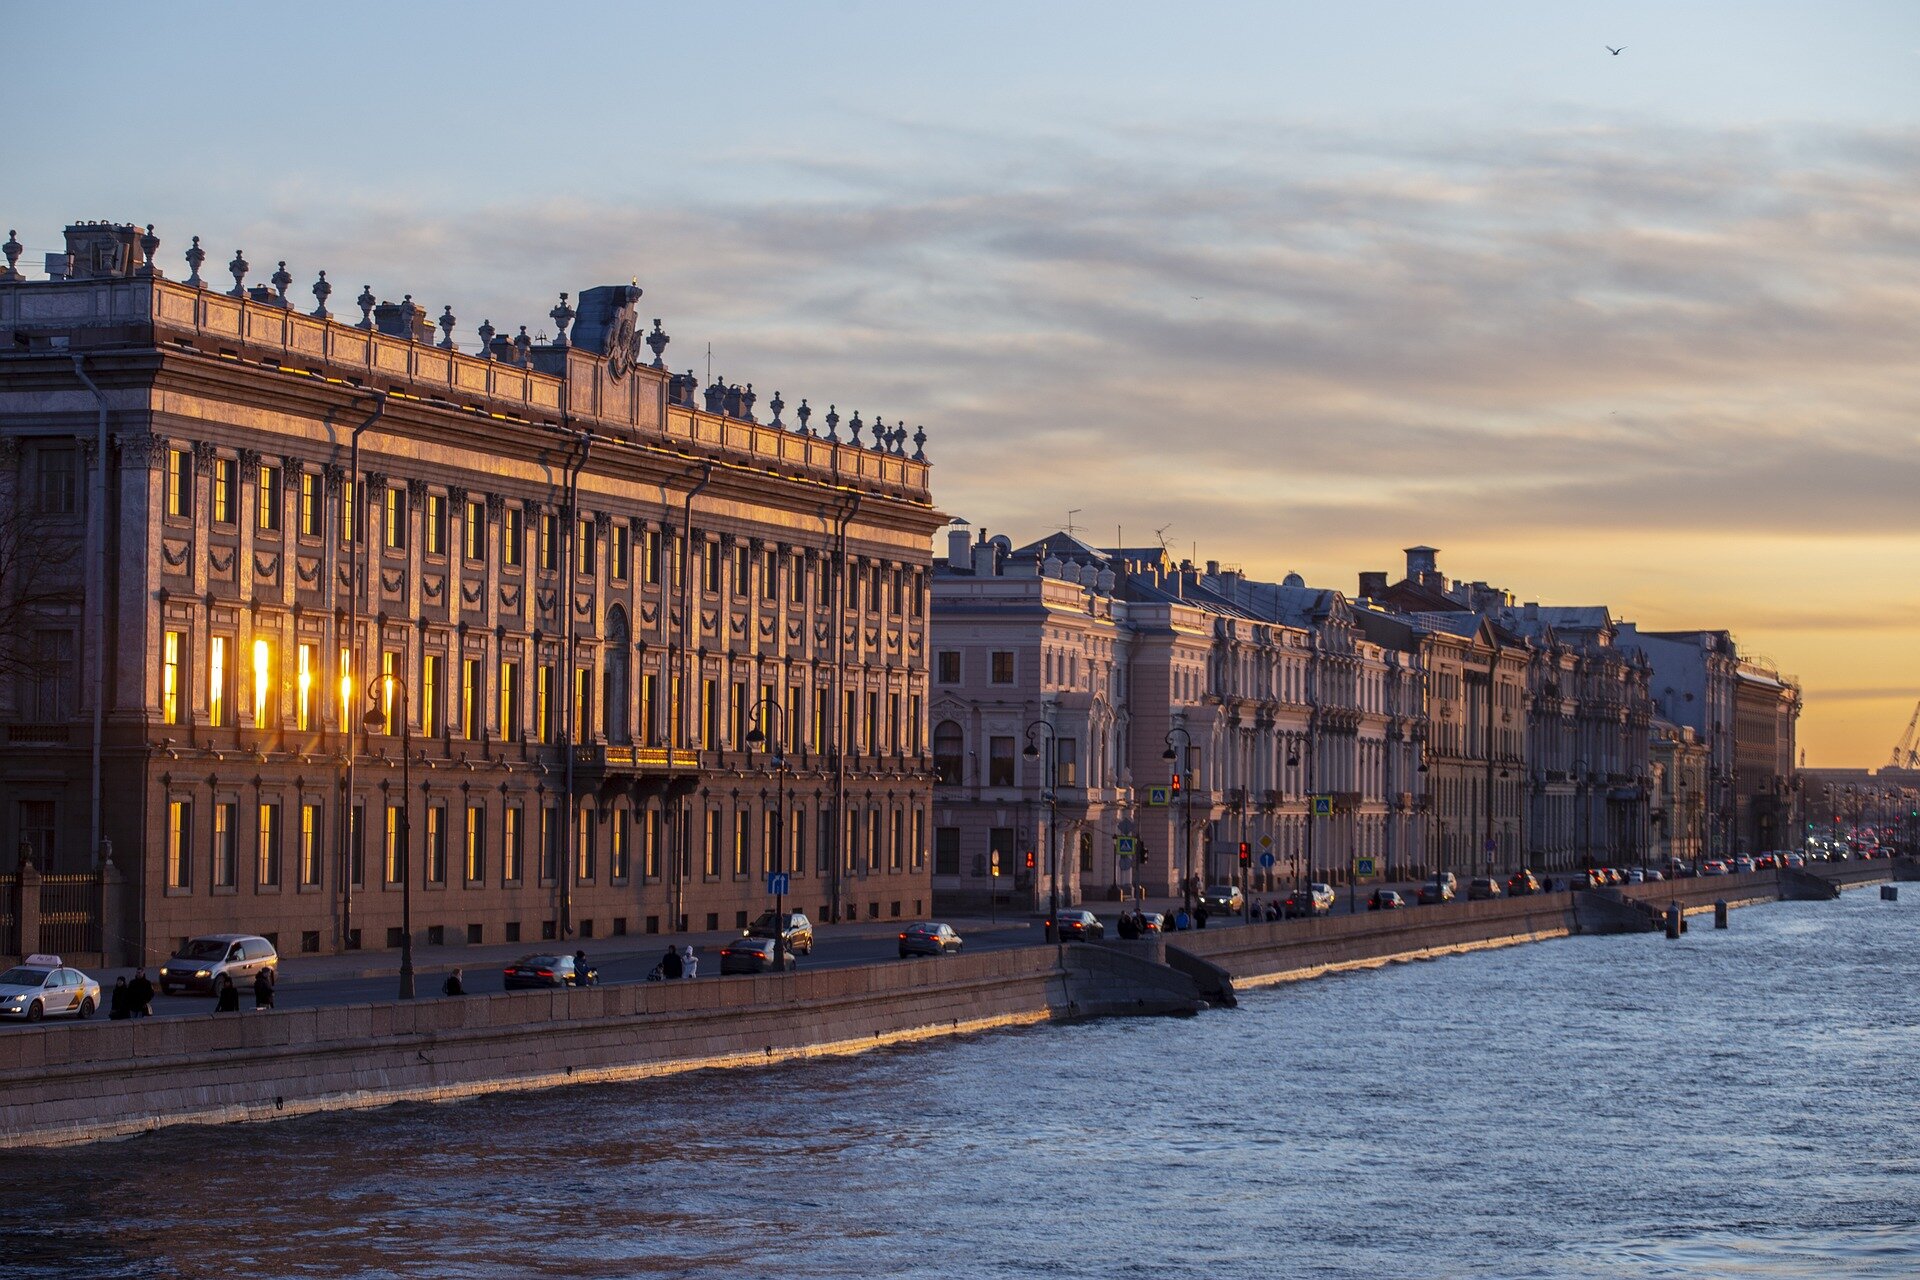 Многие знаменитые
памятники архитектуры Санкт-Петербурга выходят фасадами на городские
набережные, превращая любую прогулку по ним в большое эстетическое
удовольствие.